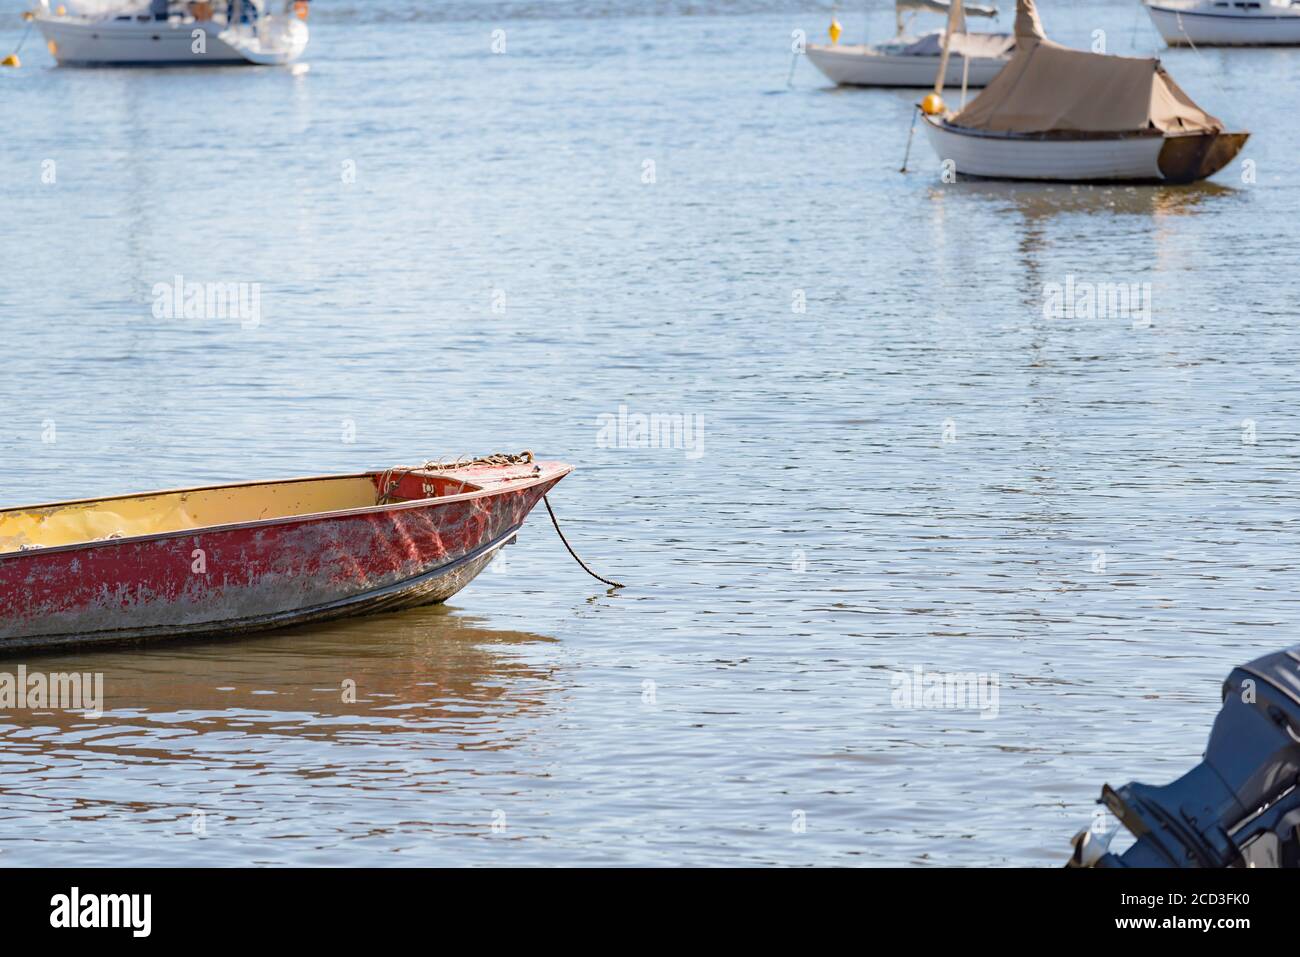 Un bote abierto o un flaco anclado cerca de barcos de vela en las tranquilas aguas del río Hawkesbury cerca de la isla de Dangar, Nueva Gales del Sur, Australia Foto de stock